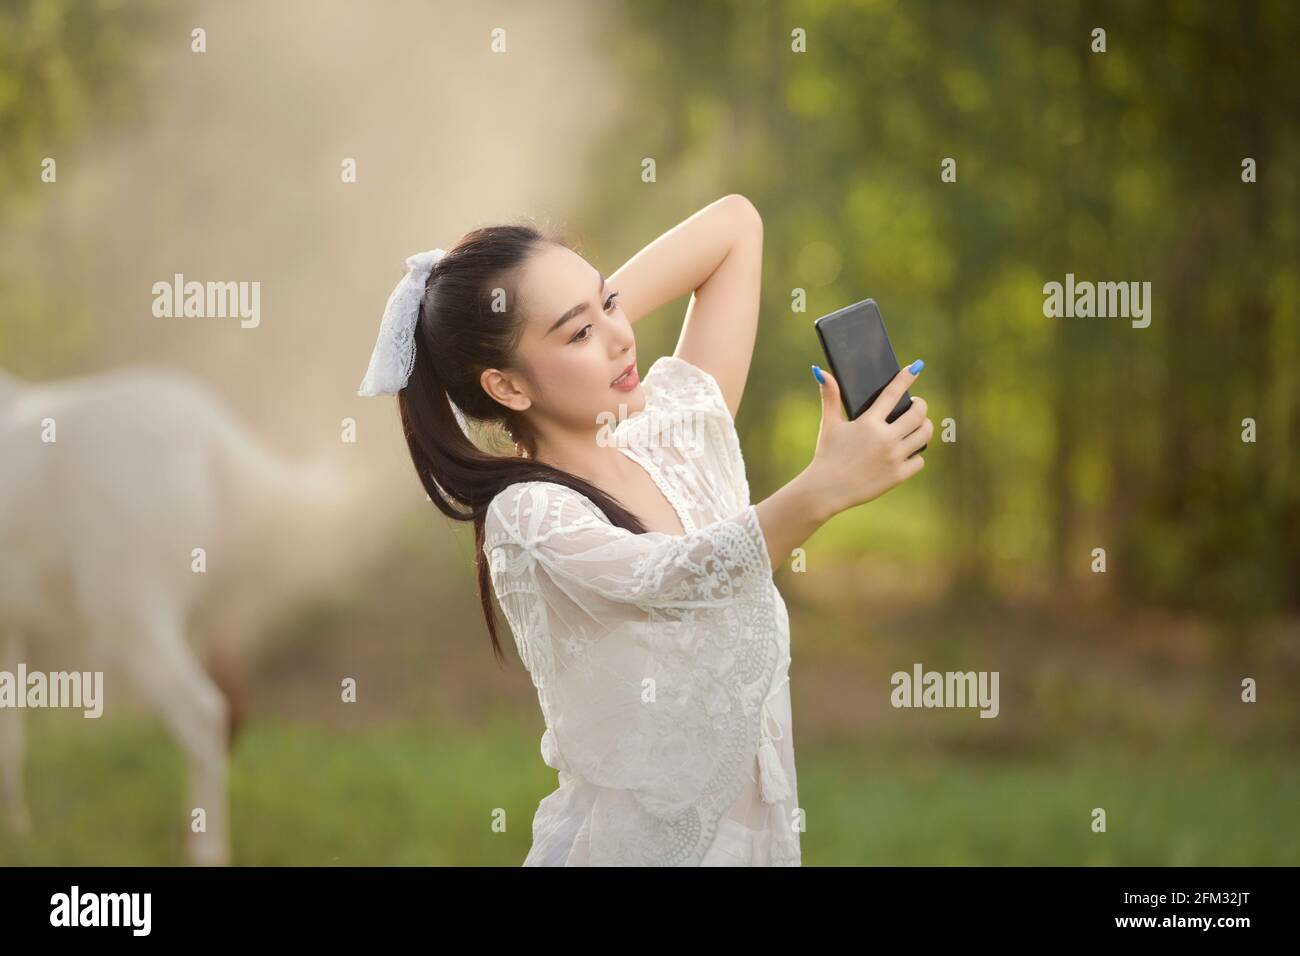 Schöne Frau, die auf einer Wiese steht und ein Selfie macht, Thailand Stockfoto